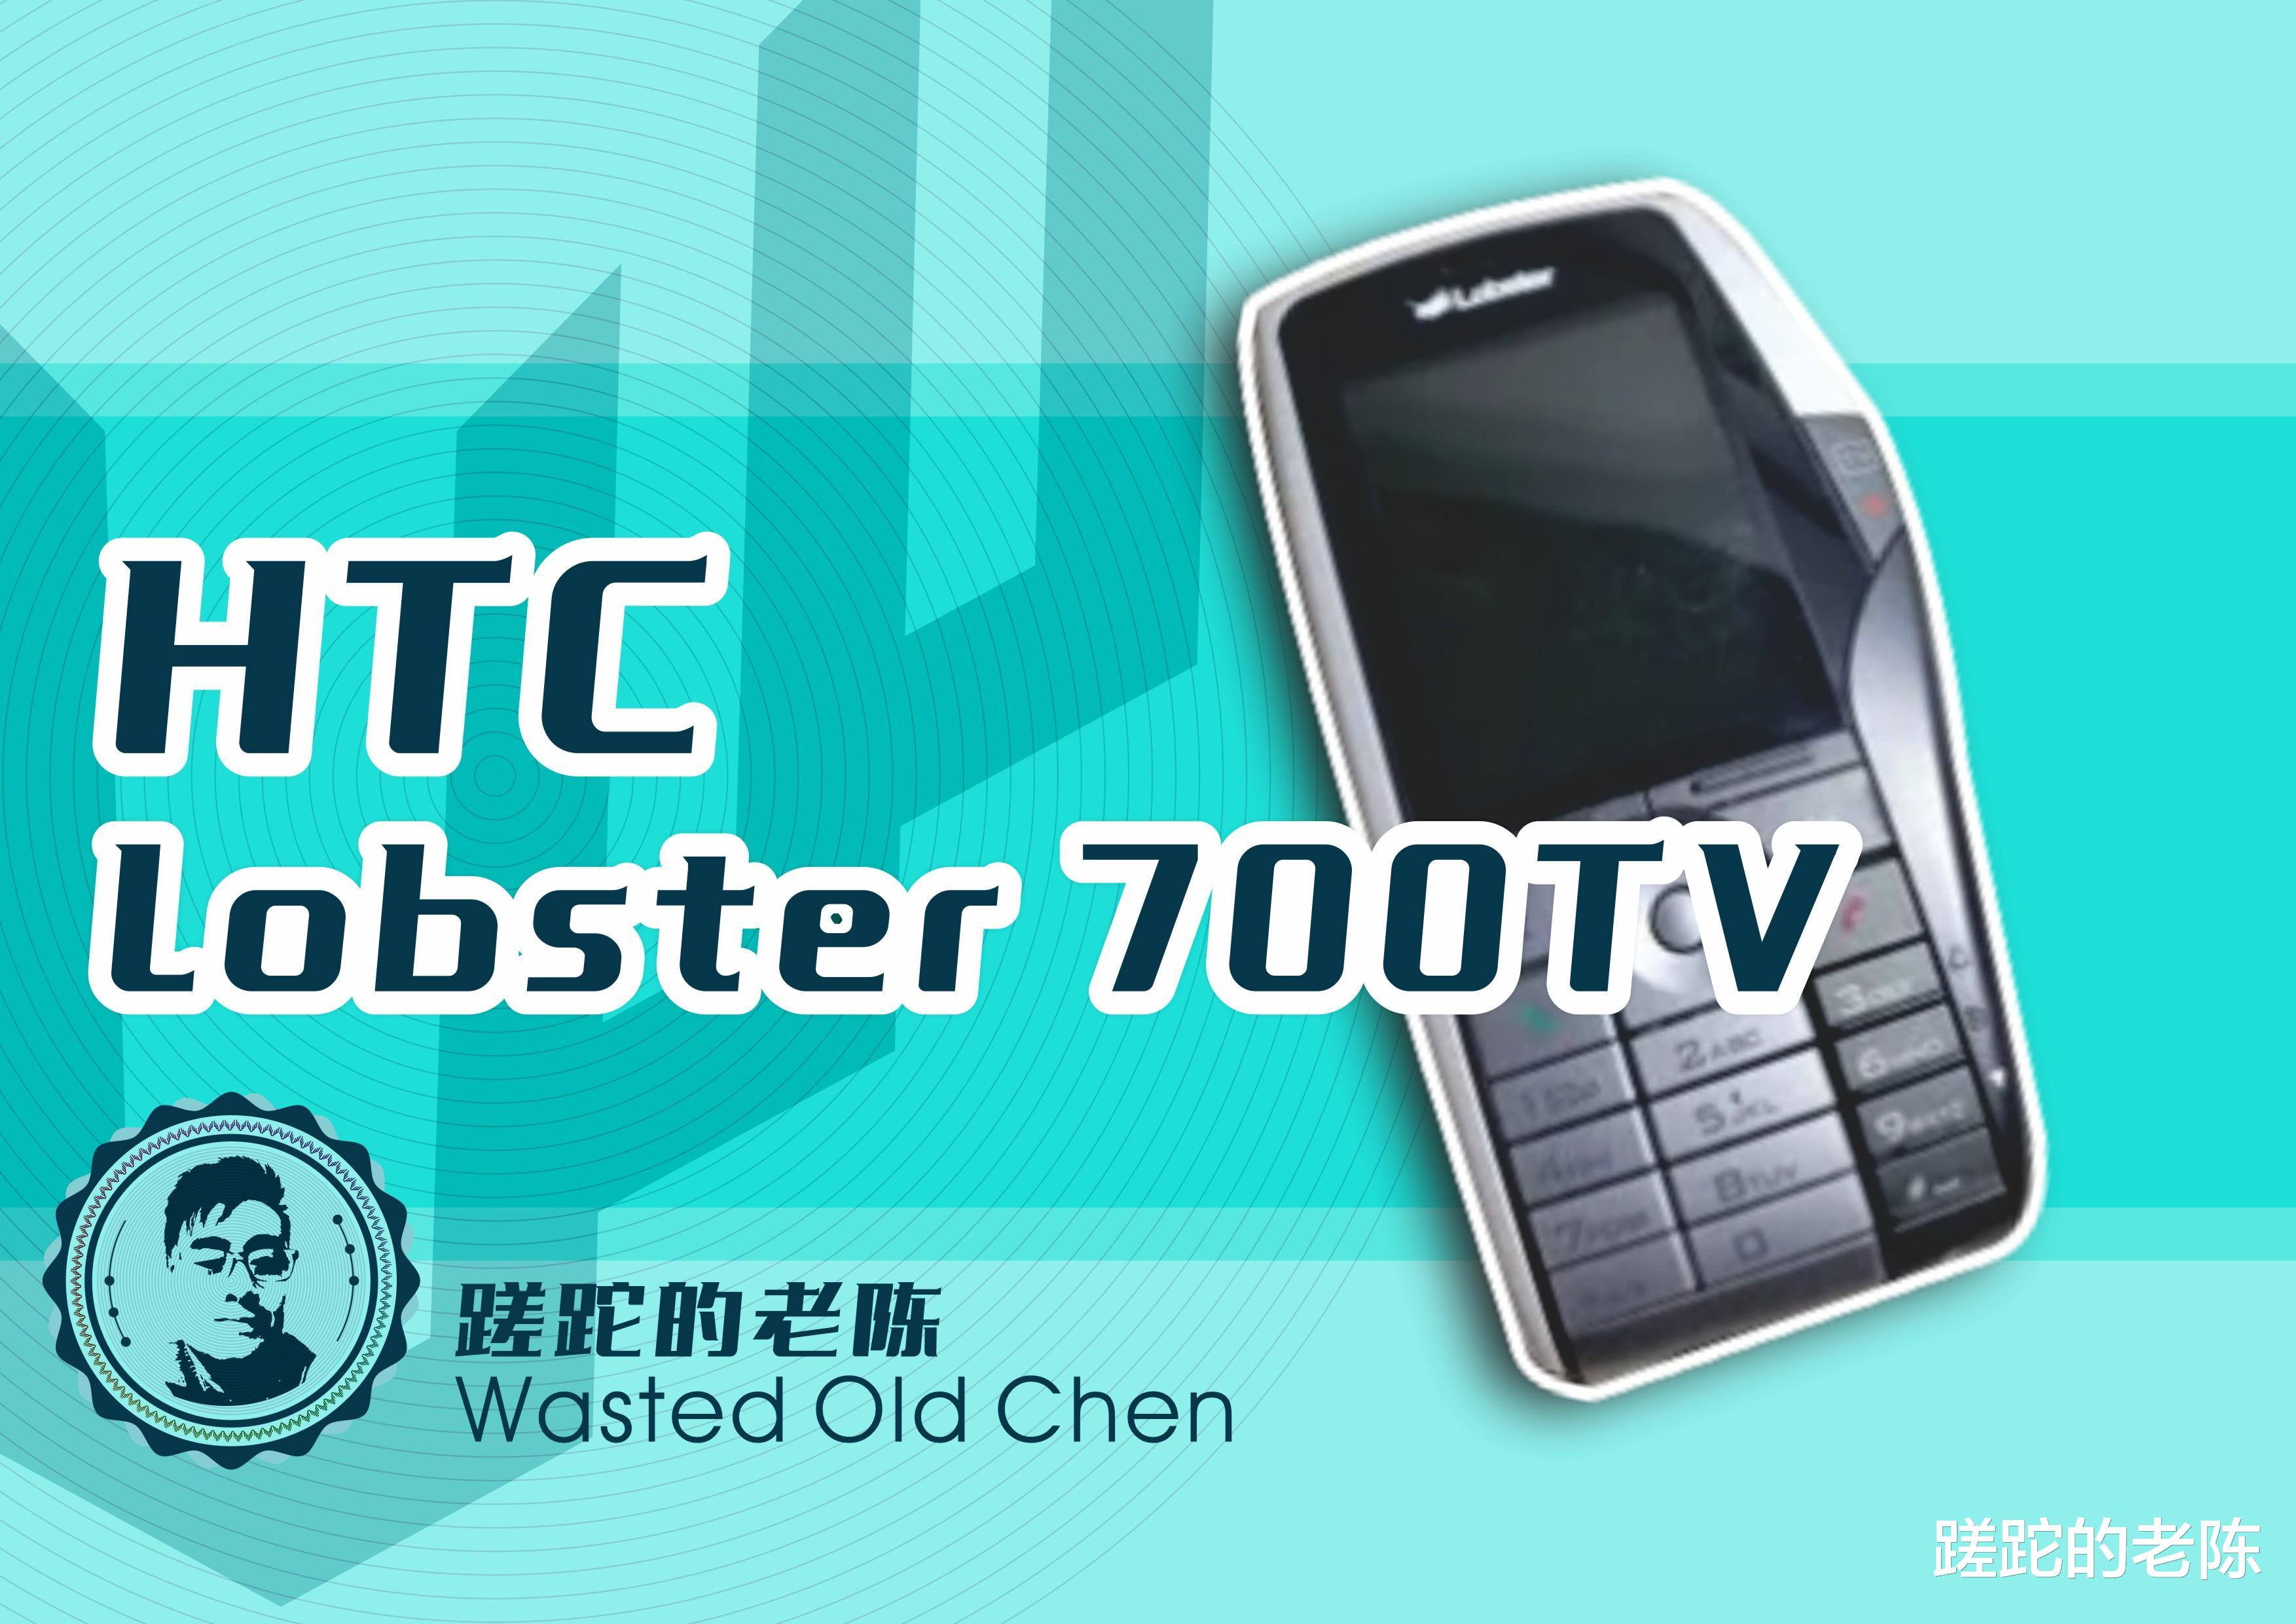 HTC|奇怪的龙虾——HTC Lobster 700TV手机